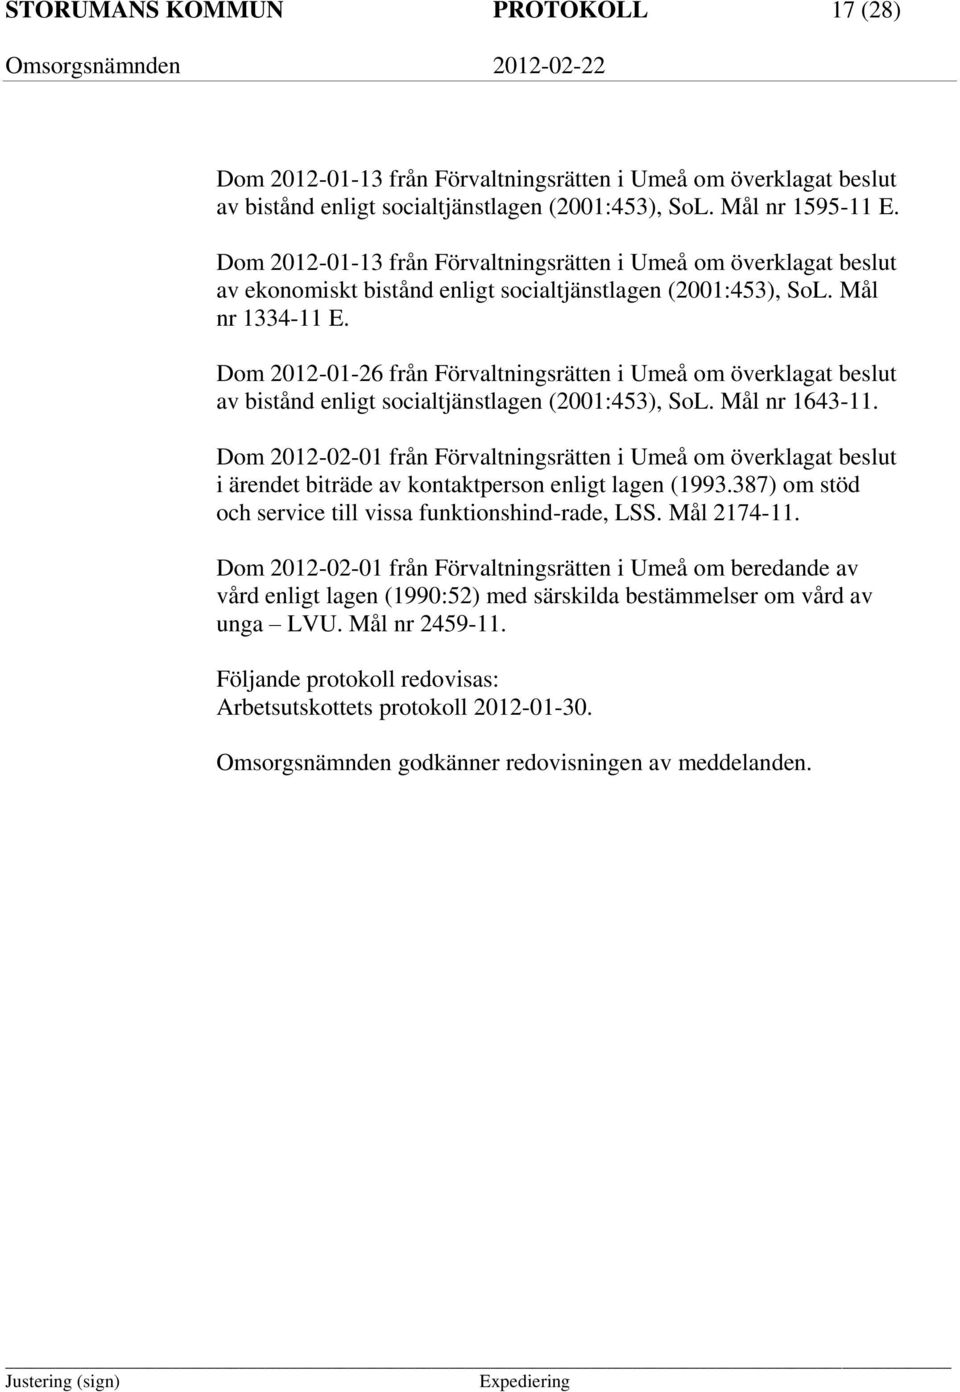 Dom 2012-01-26 från Förvaltningsrätten i Umeå om överklagat beslut av bistånd enligt socialtjänstlagen (2001:453), SoL. Mål nr 1643-11.